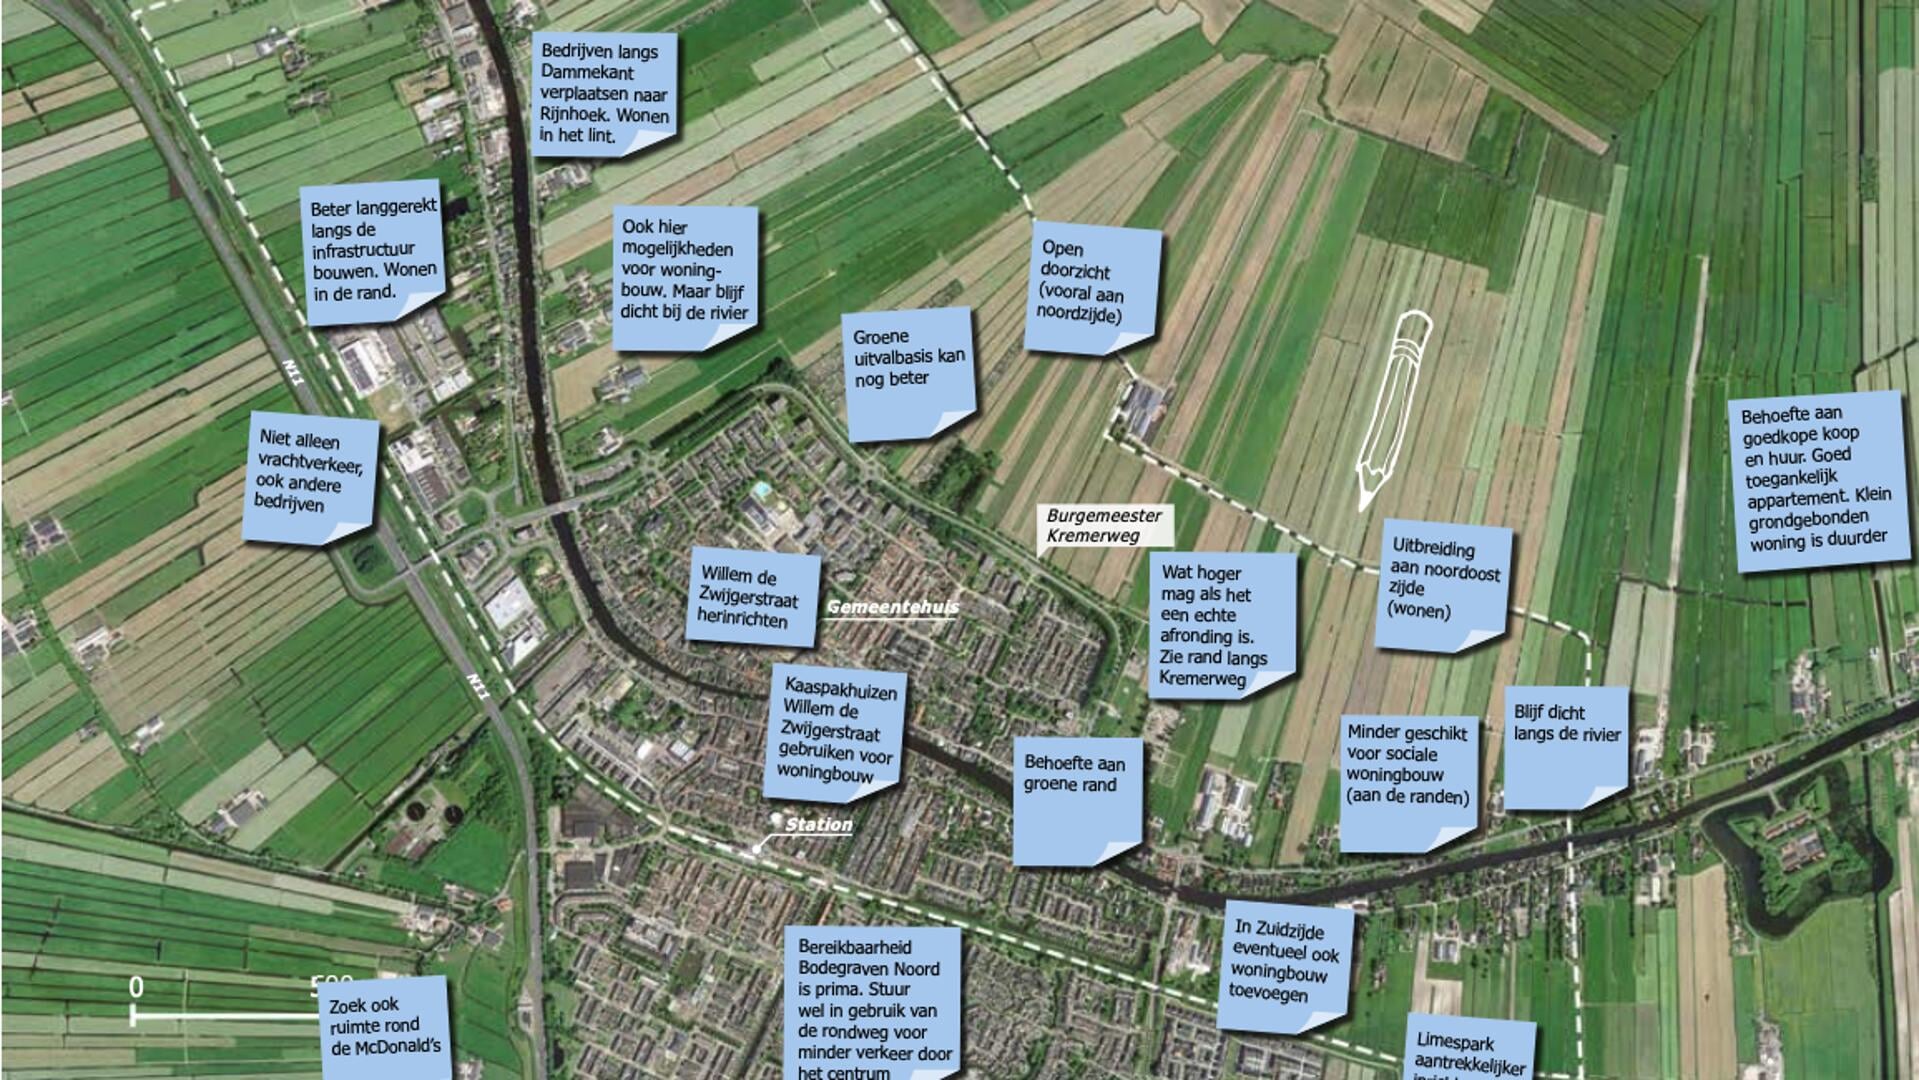 Ideeën voor de Bodegraafse Oude Rijnzone, hier op het gebied van fijn wonen en werken.